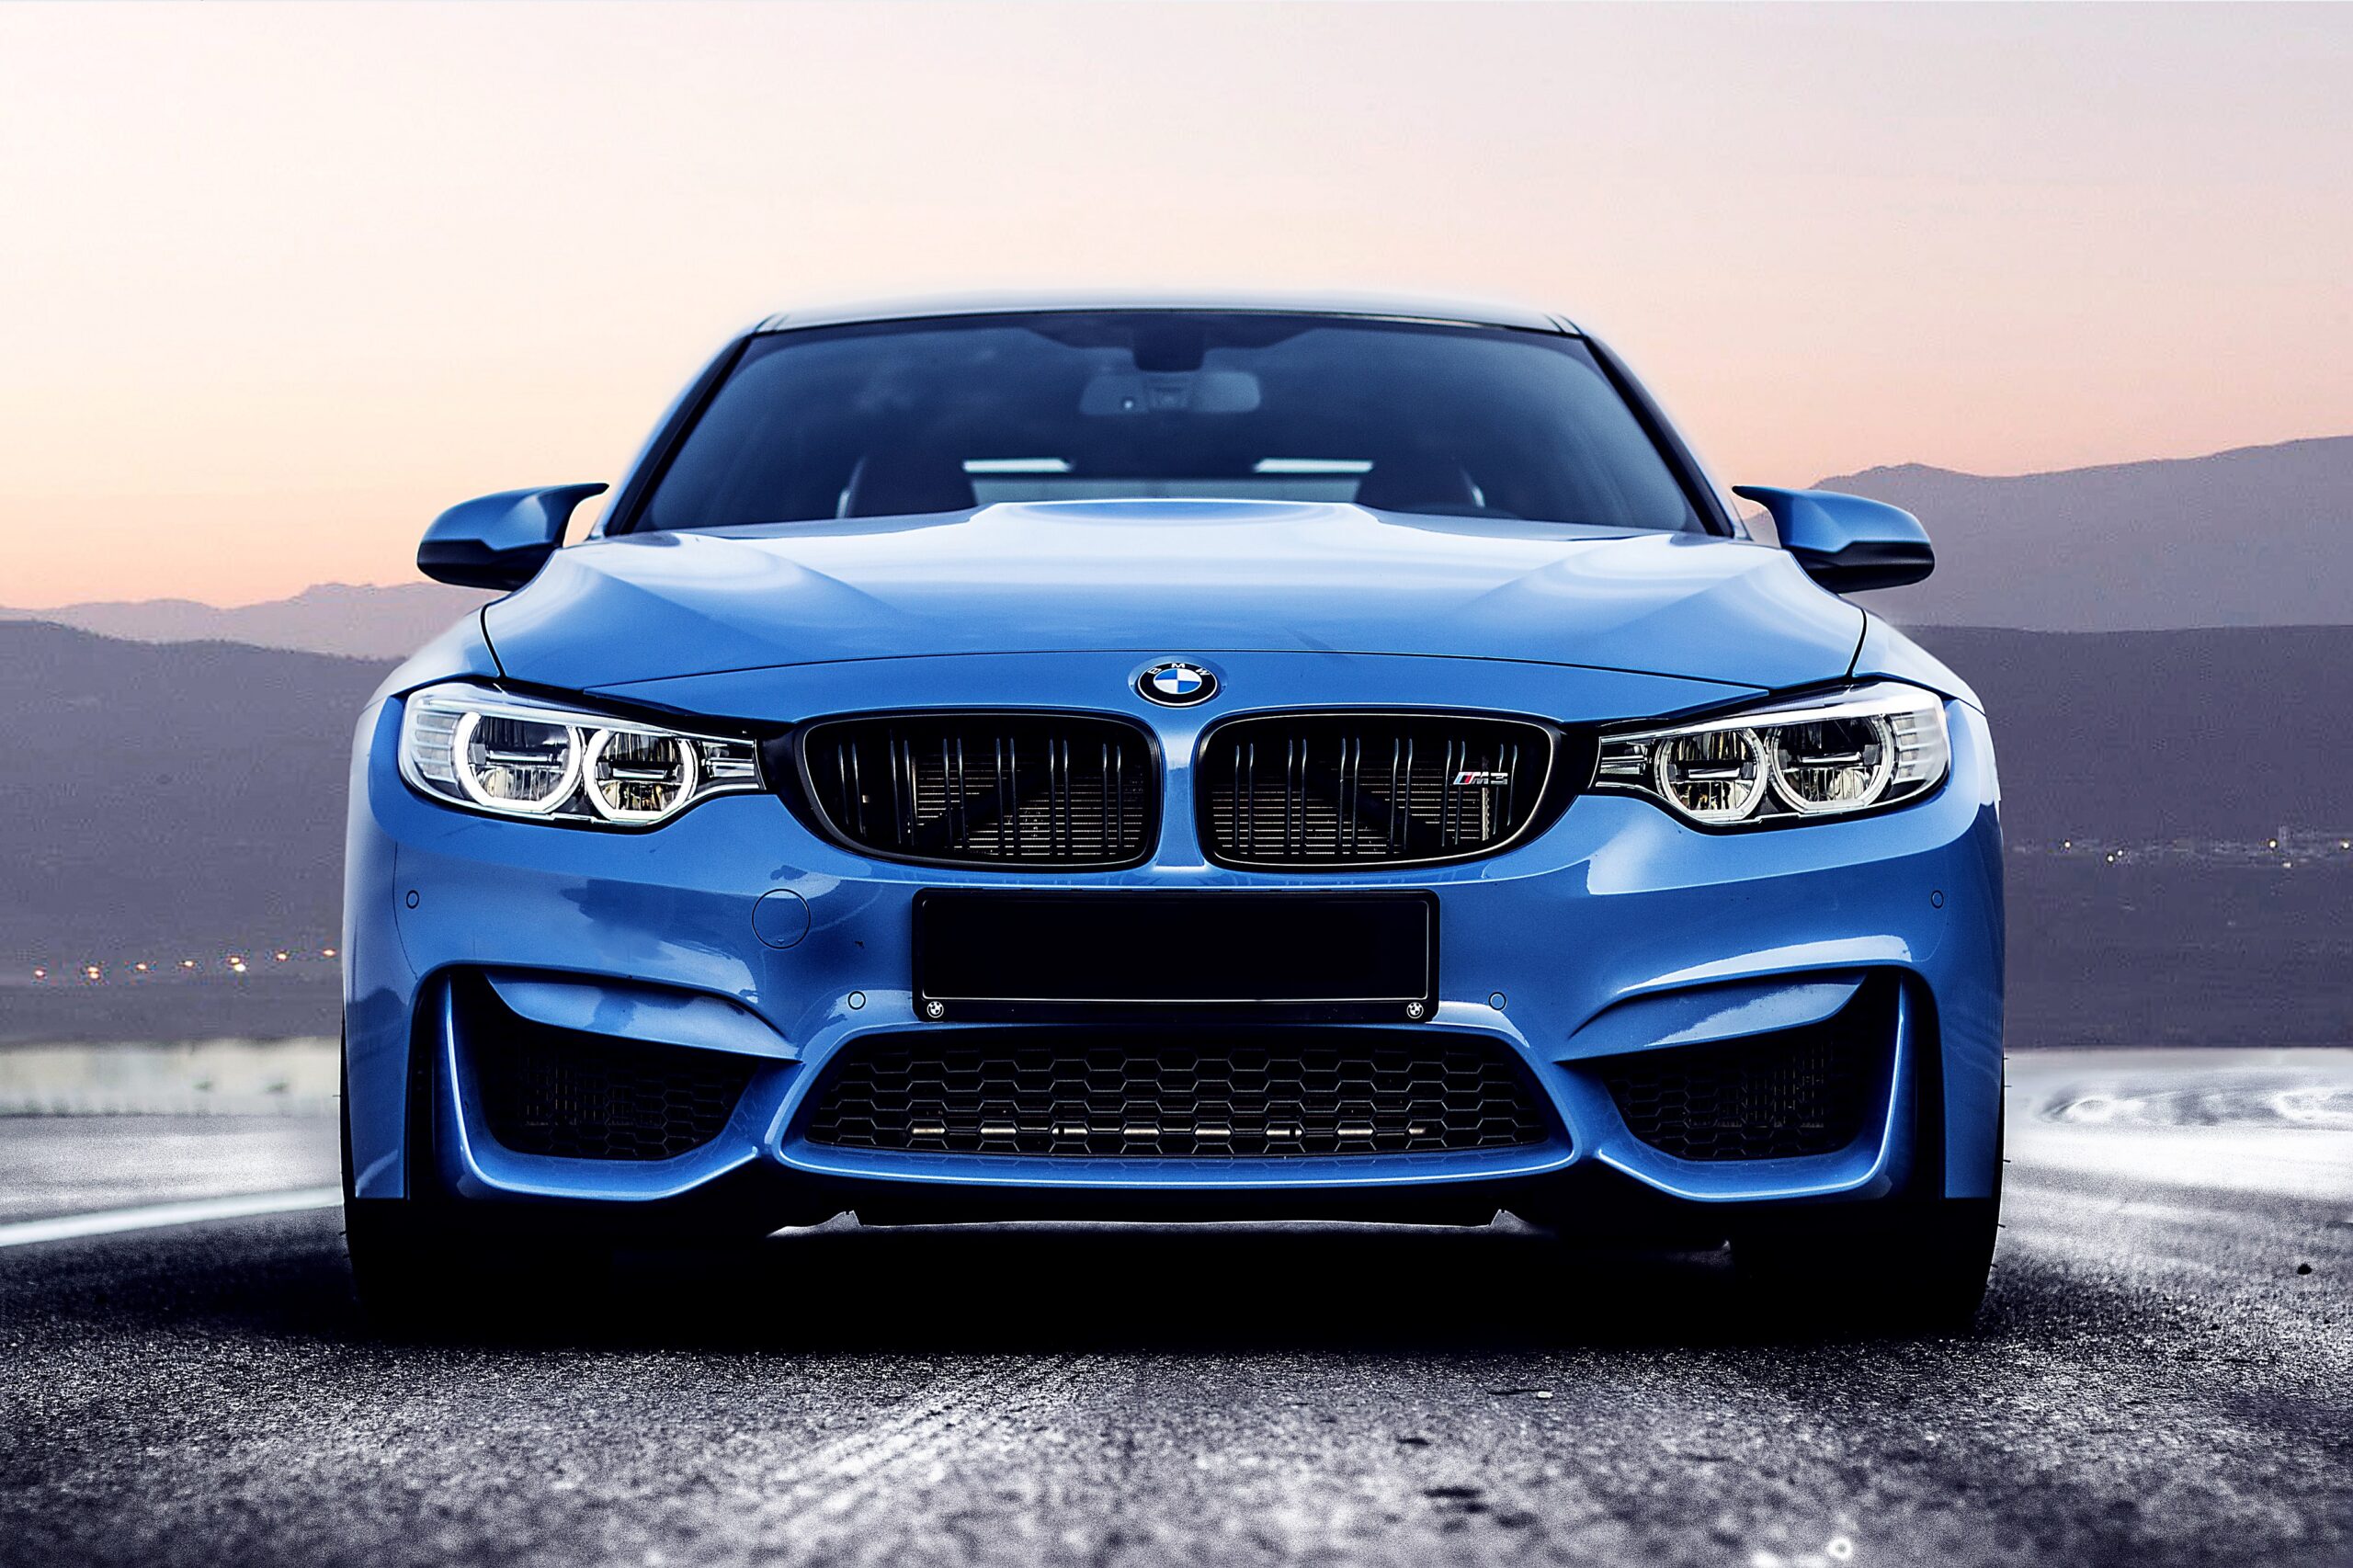 Pablo Marçal e a BMW: quanto rende o valor dos carros de luxo no Tesouro?